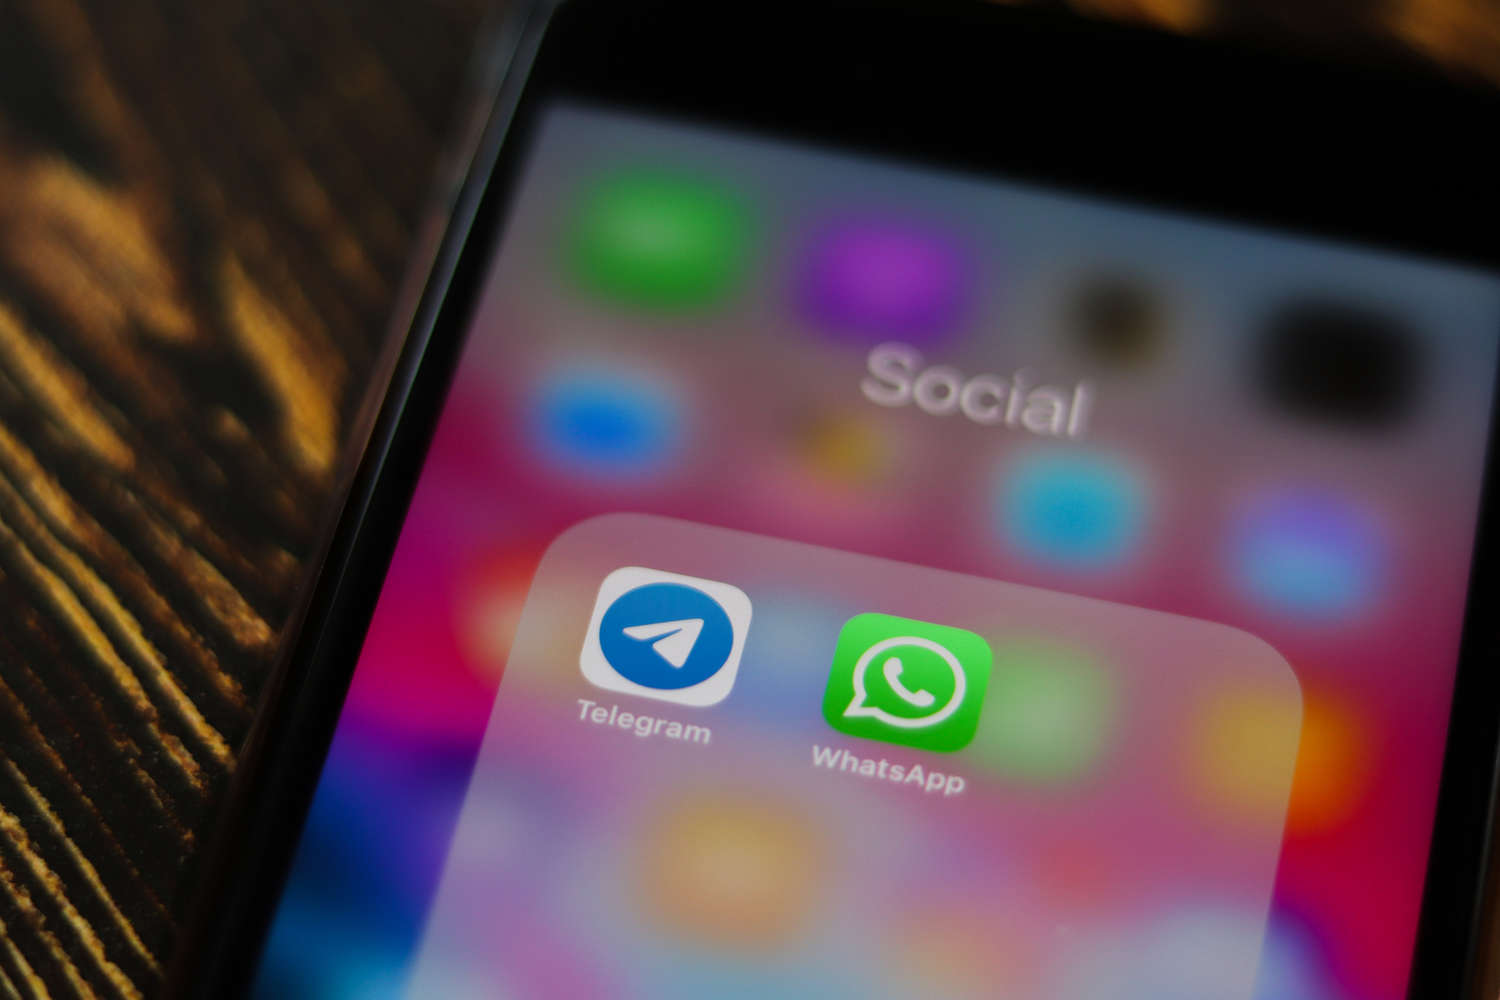 WhatsApp и Telegram вводят с 21 марта новые правила блокировки аккаунтов